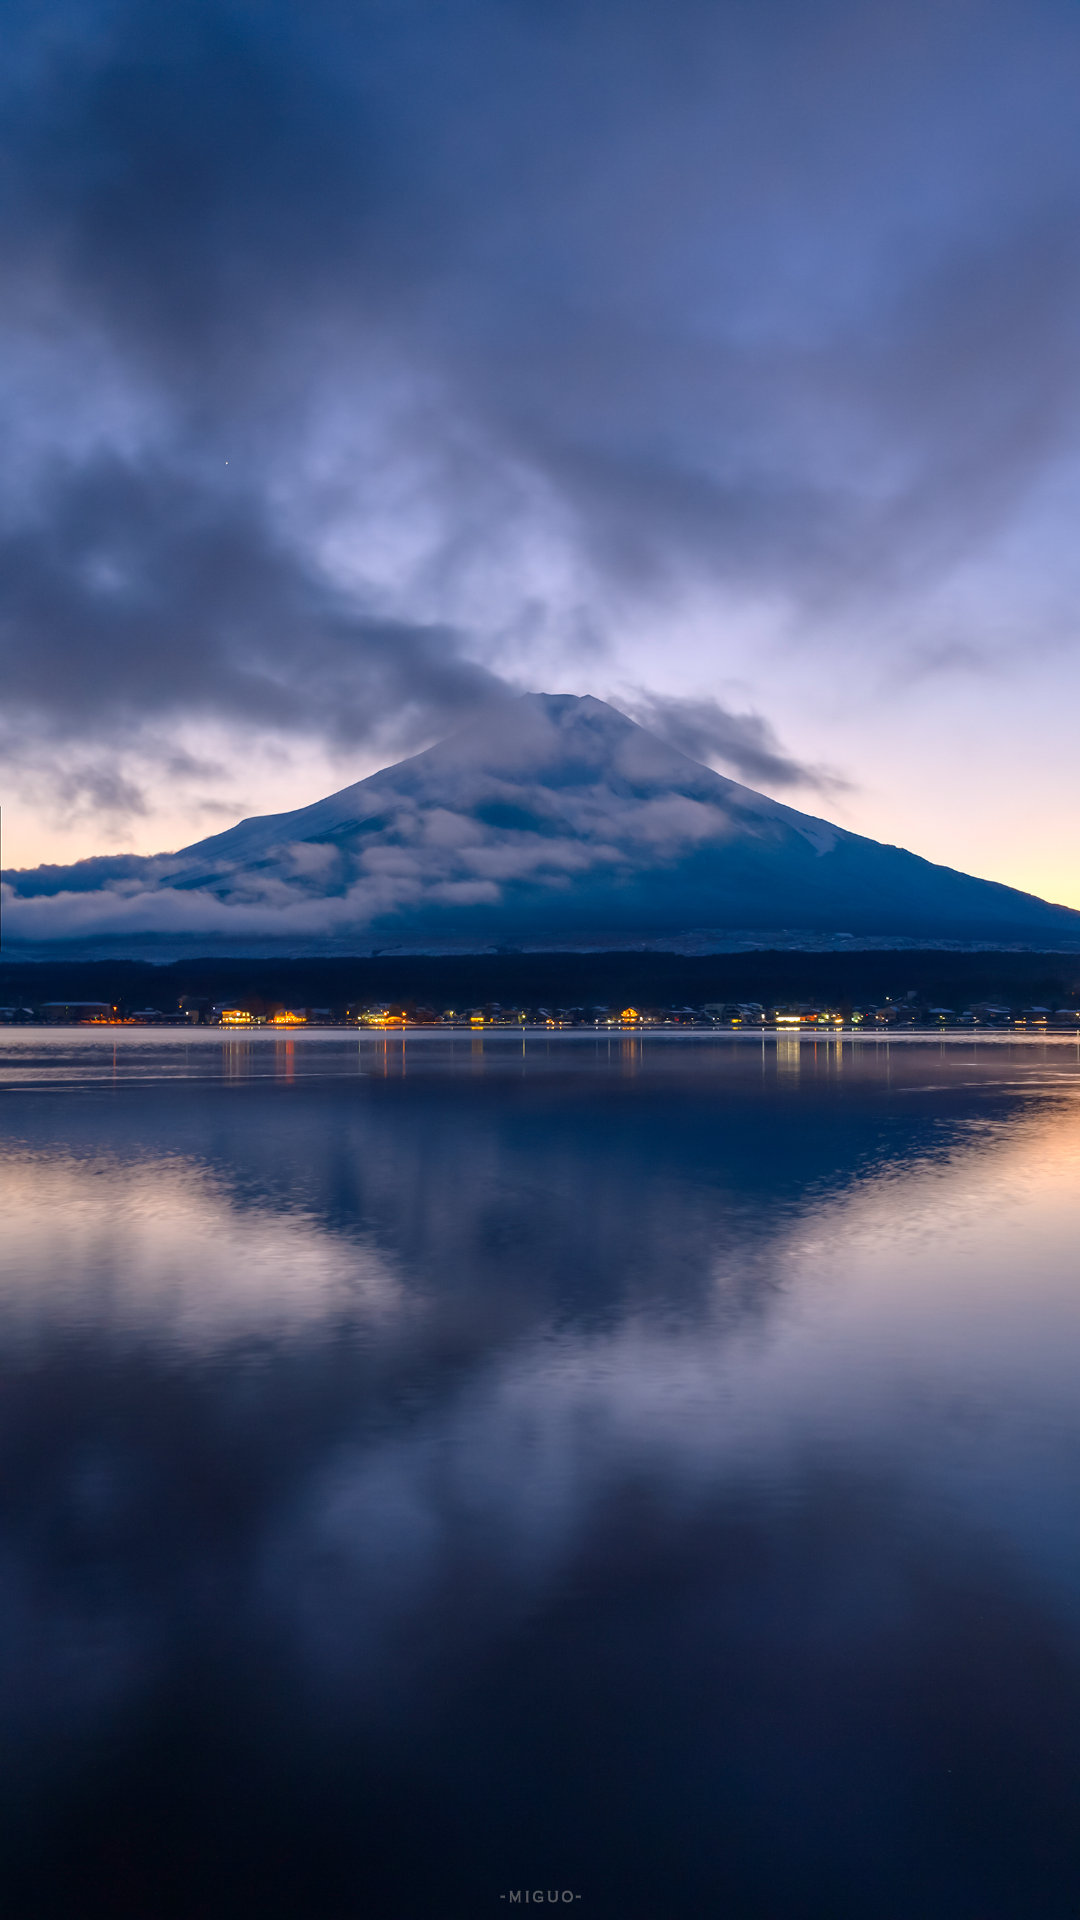 冬日的富士山景色,什么水平?